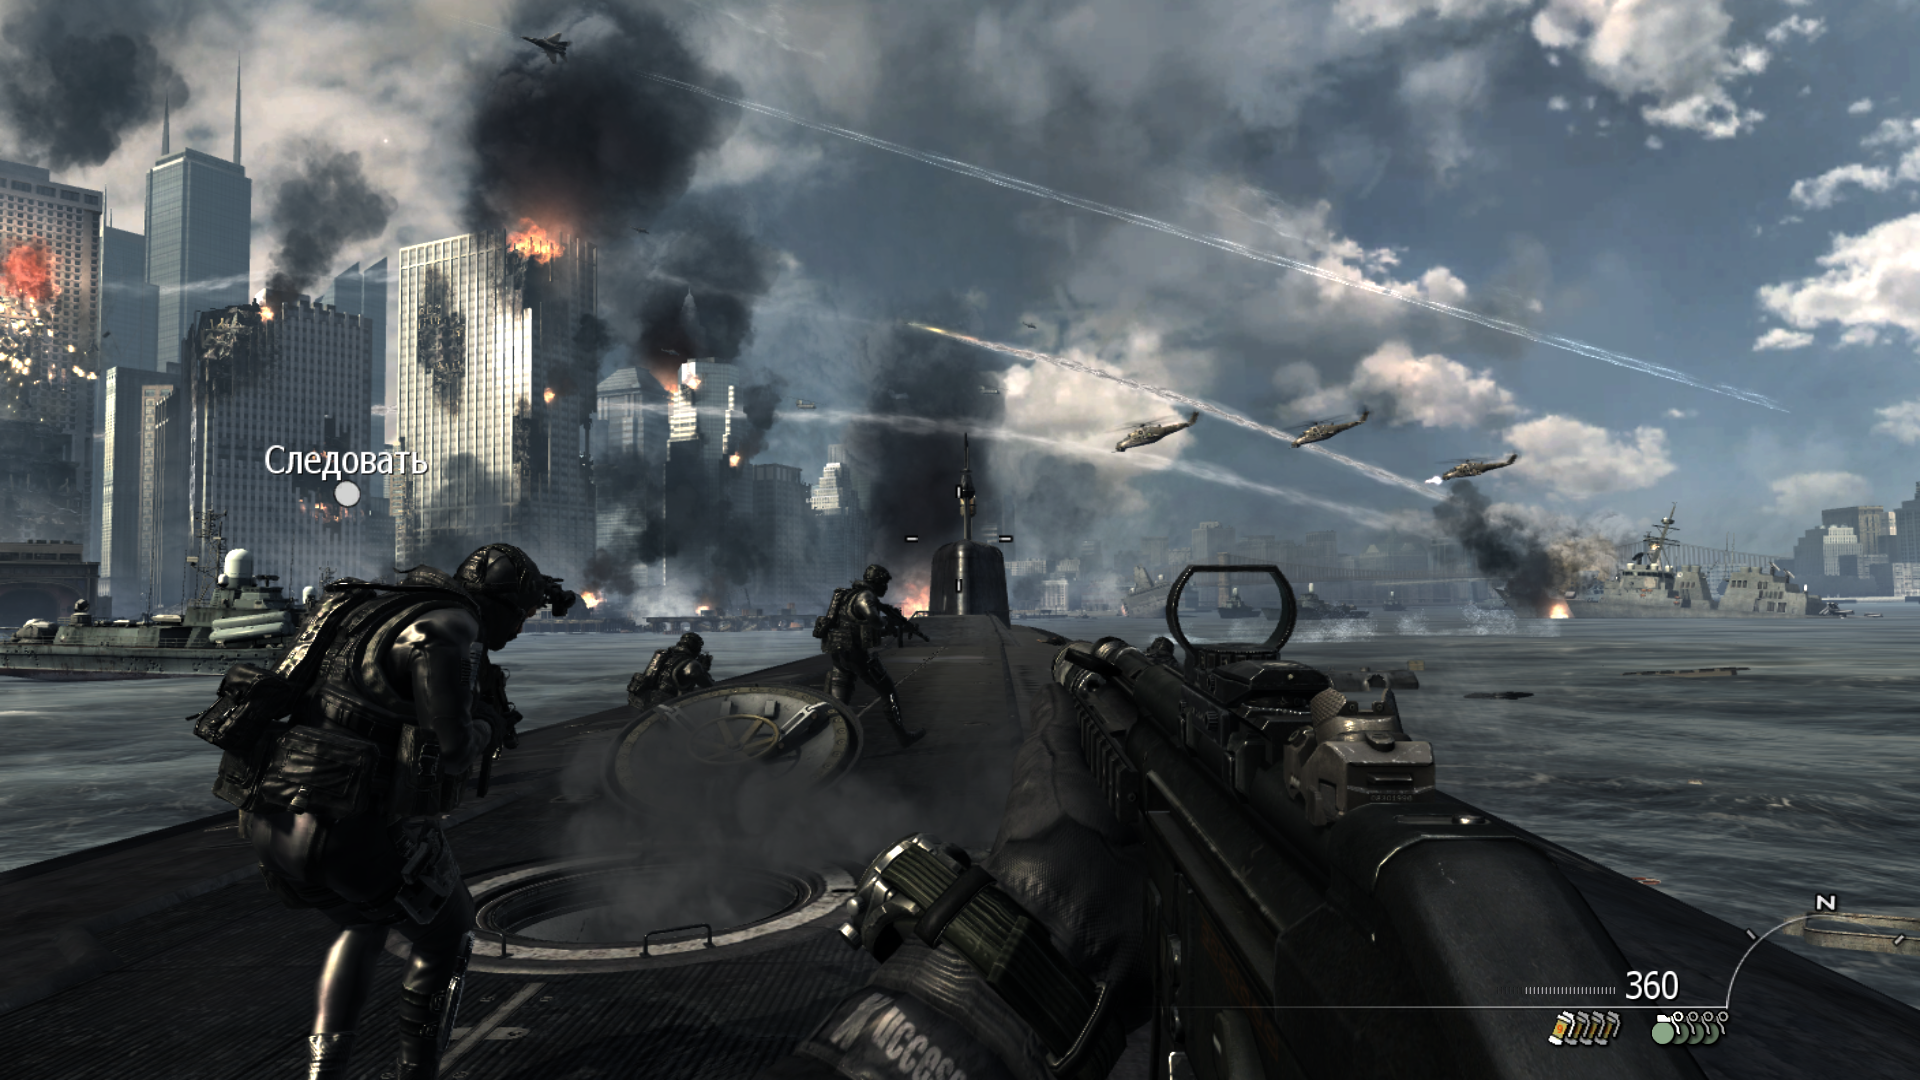 Игры от механиков call of duty. Call of Duty: Modern Warfare 3. Call of Duty Modern варфаер 3. Call of Duty 8 Modern Warfare 3. Call of Duty Modern Warfare 3 2011.